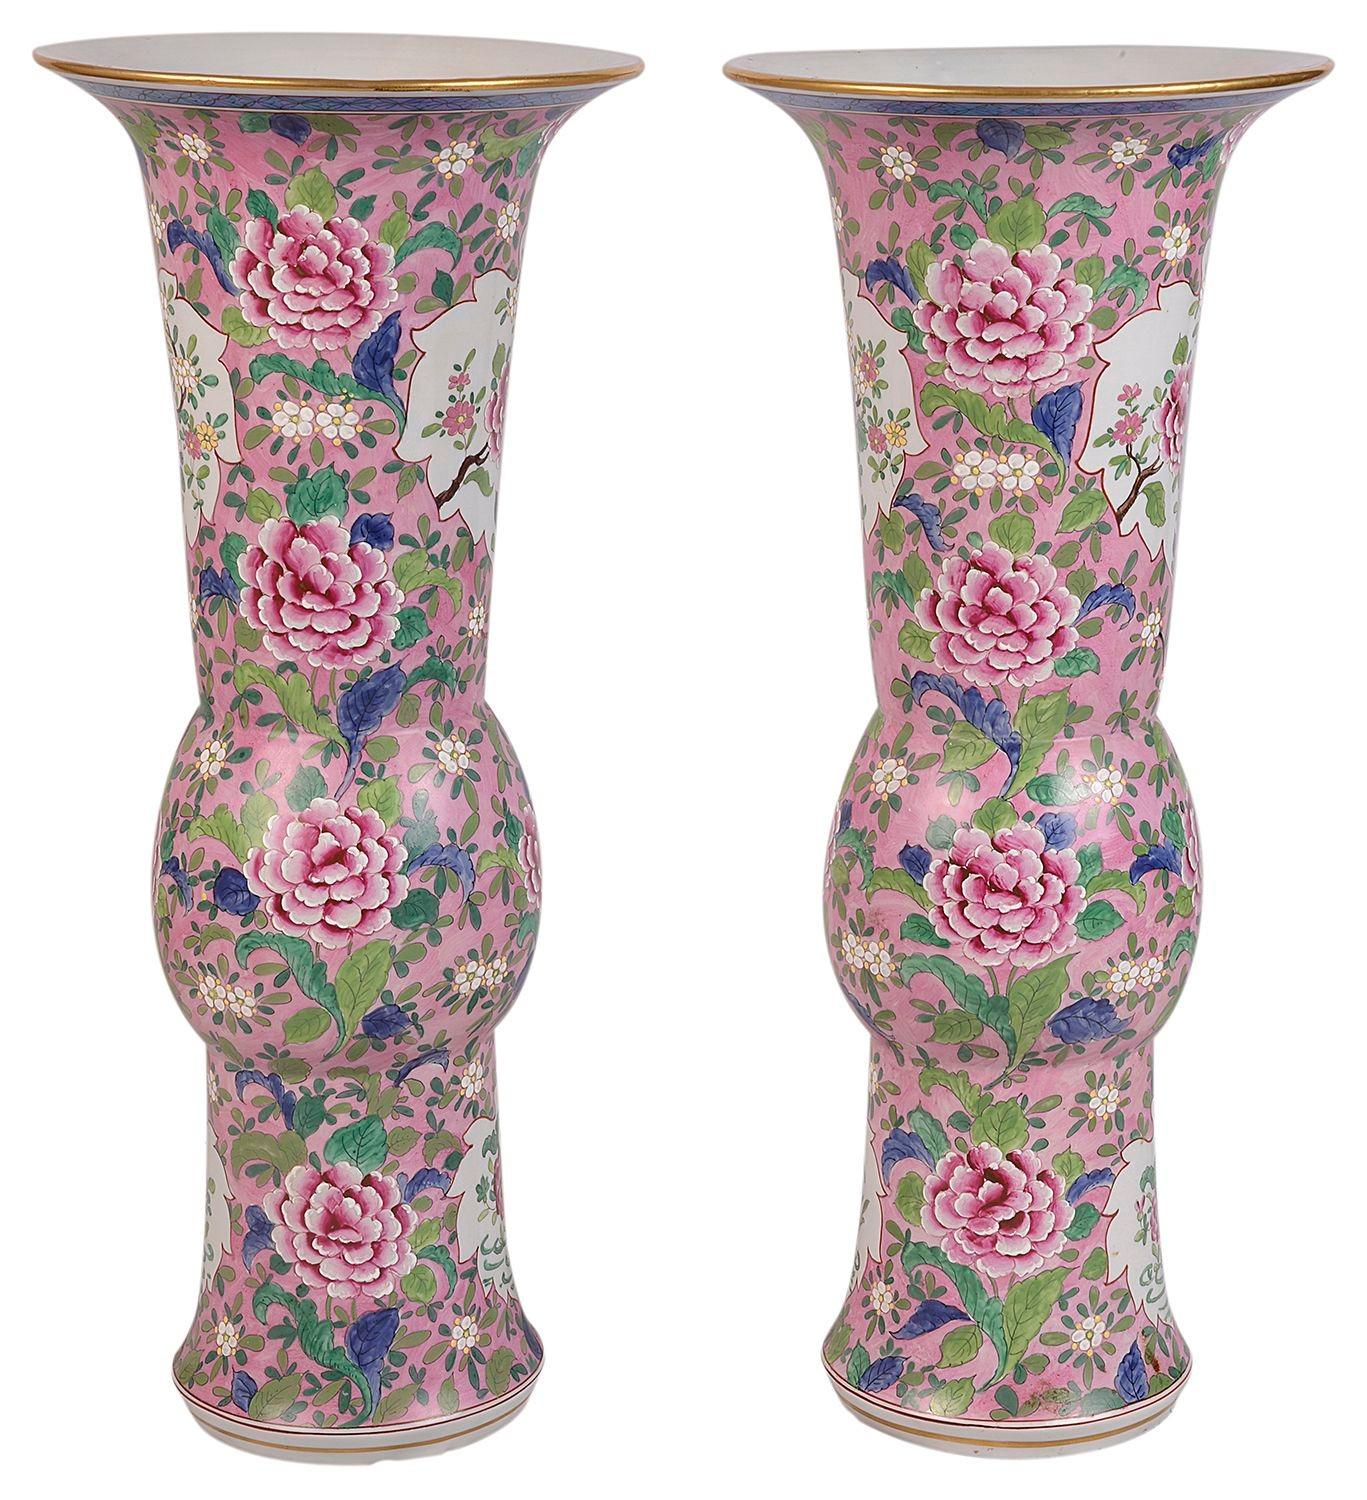 Vases/lampes de la famille rose chinoise de la fin du XIXe siècle, de bonne qualité et très décoratifs. Chacun d'entre eux représente de magnifiques fleurs et feuillages exotiques. 
 
 
Lot 72. 61601. TNUKZ.